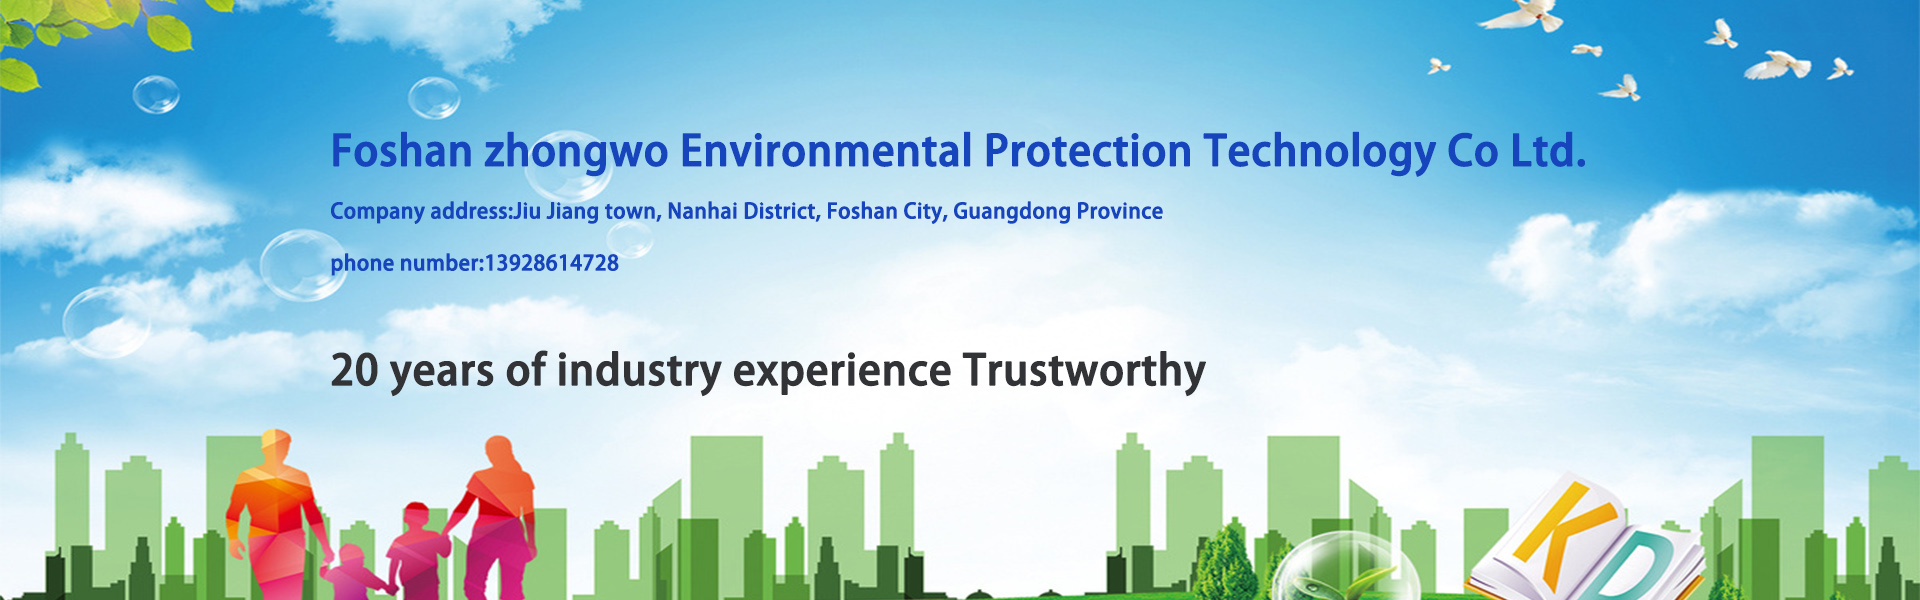 thiết bị xử lý nước, thiết bị lọc nước, thiết bị bảo vệ môi trường,Foshan zhongwo Environmental Protection Technology Co Ltd.